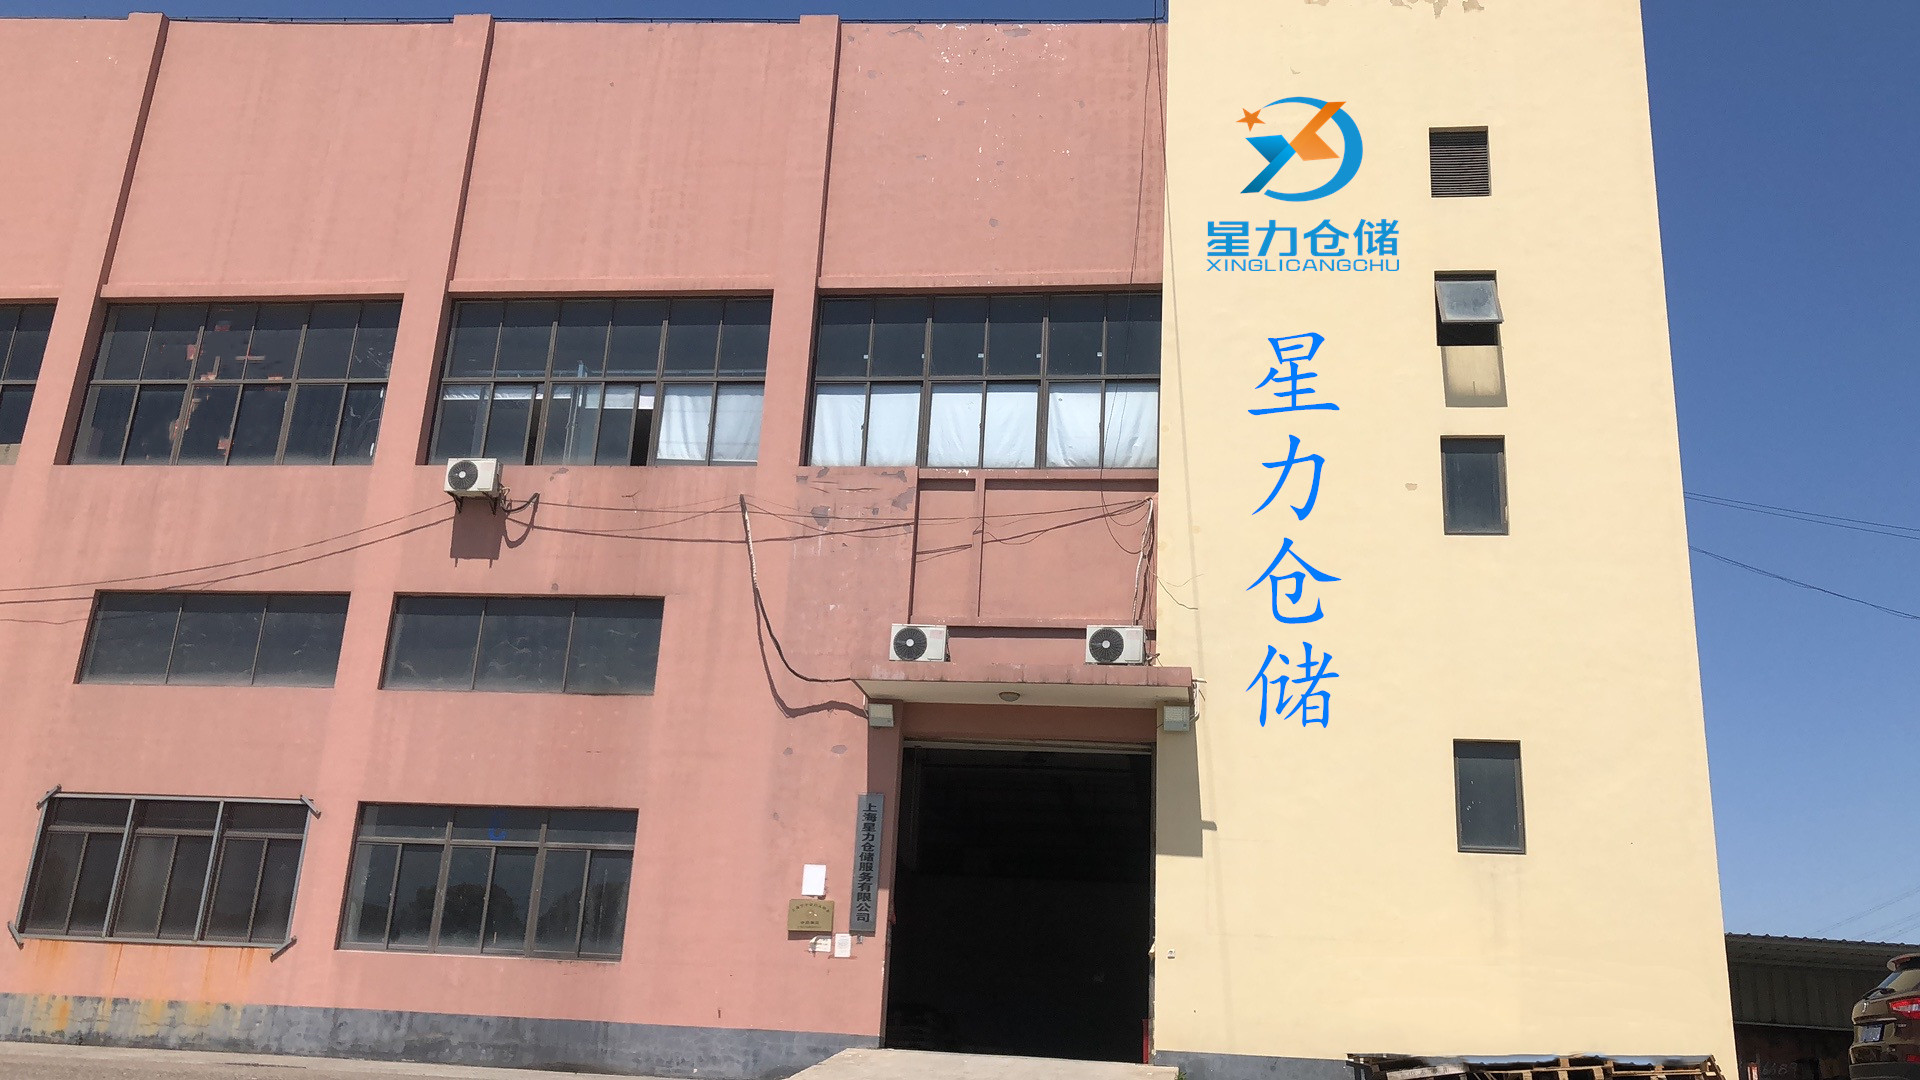 上海仓储托管,一站式电商小仓库外包,灵活